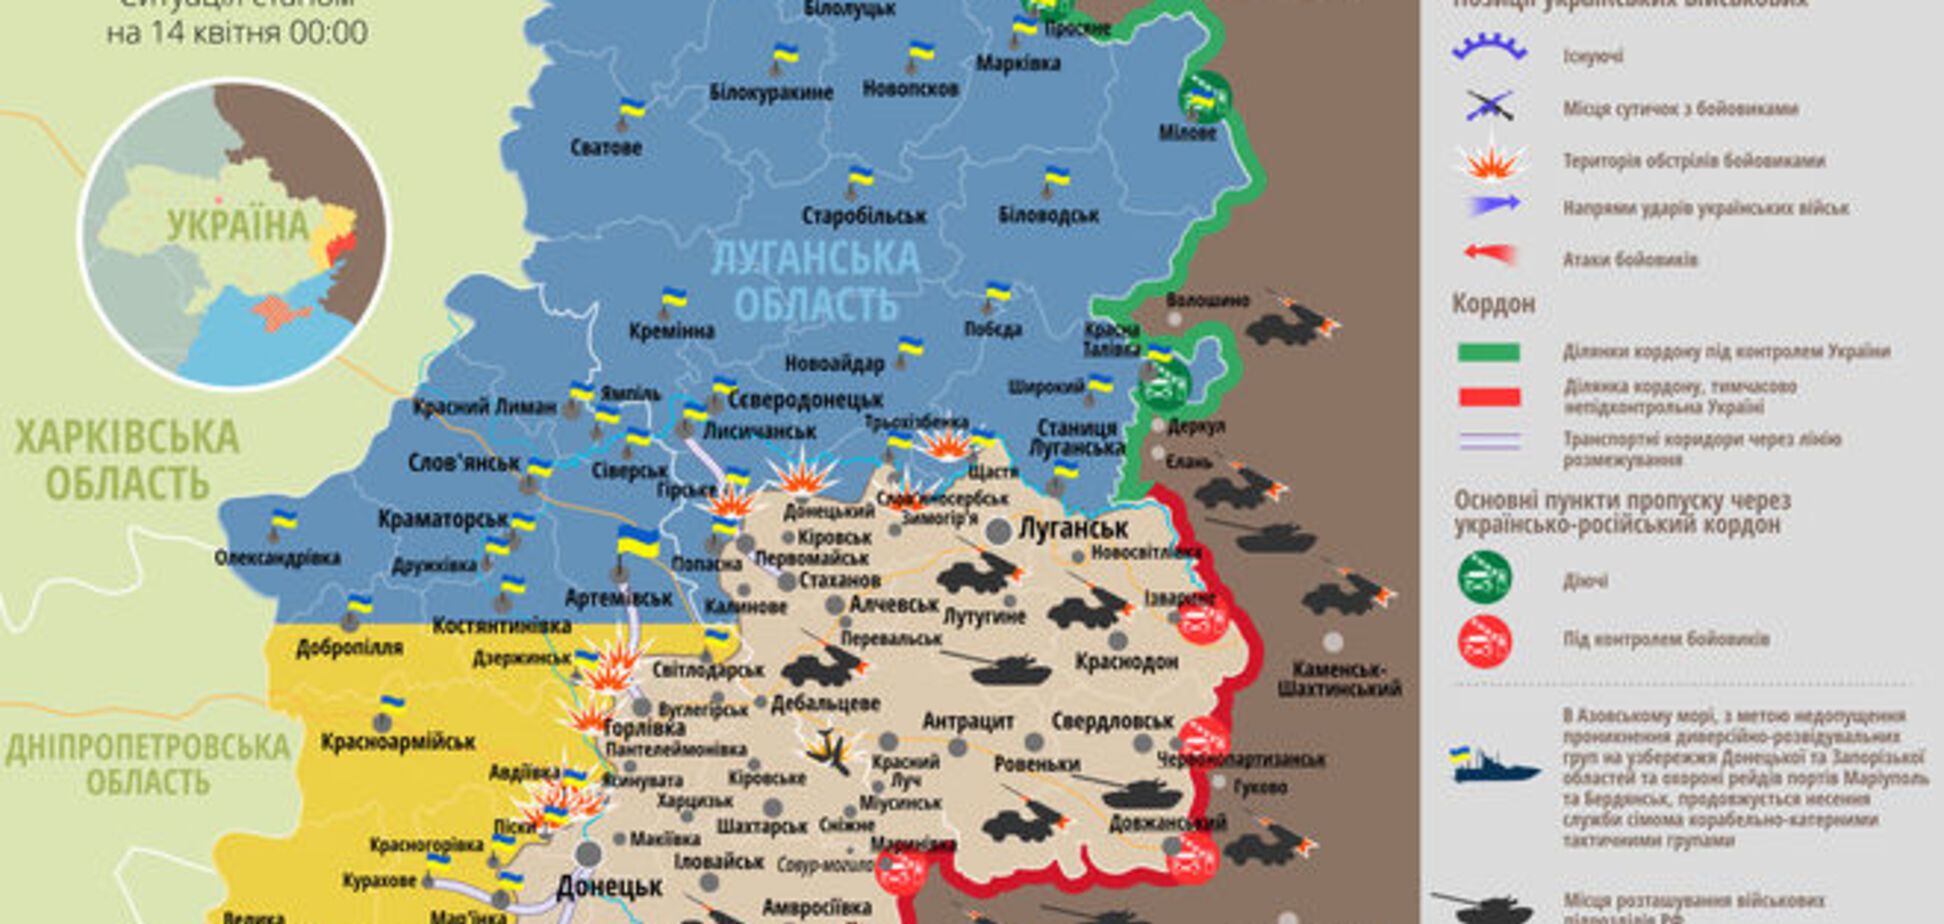 'Перемирие' на Донбассе под звуки обстрелов: карта АТО